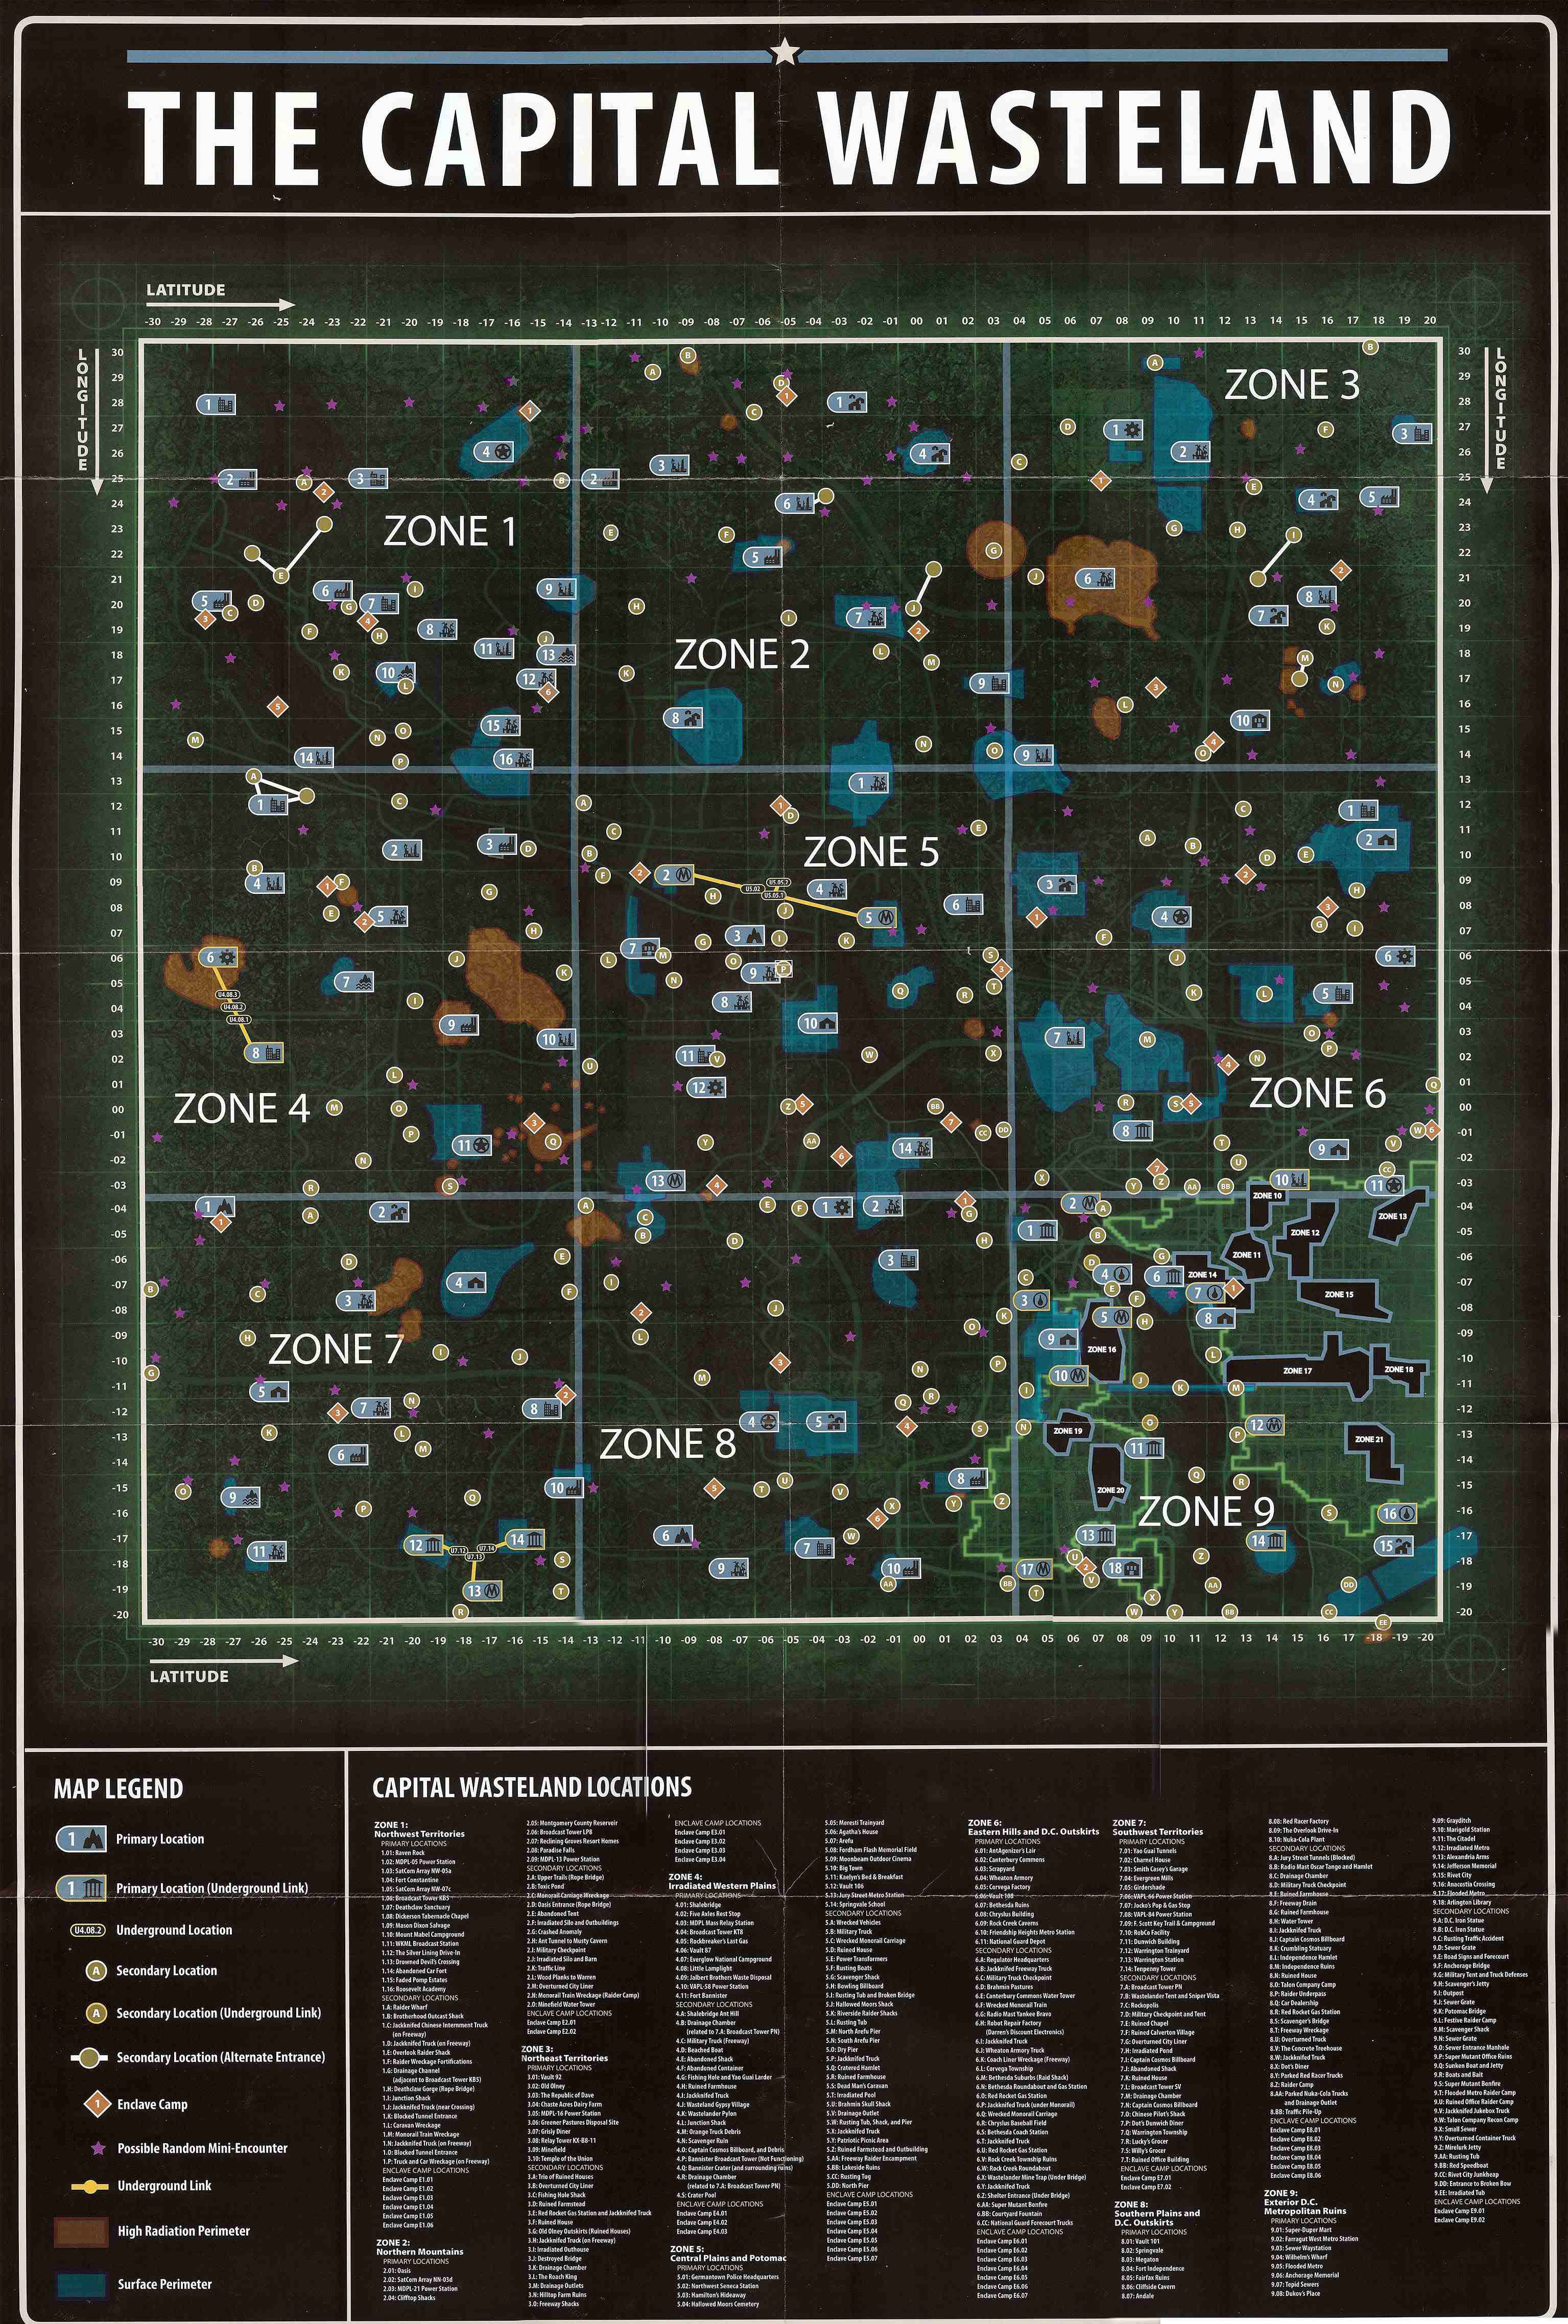 Fallout 3 world map, Fallout Wiki